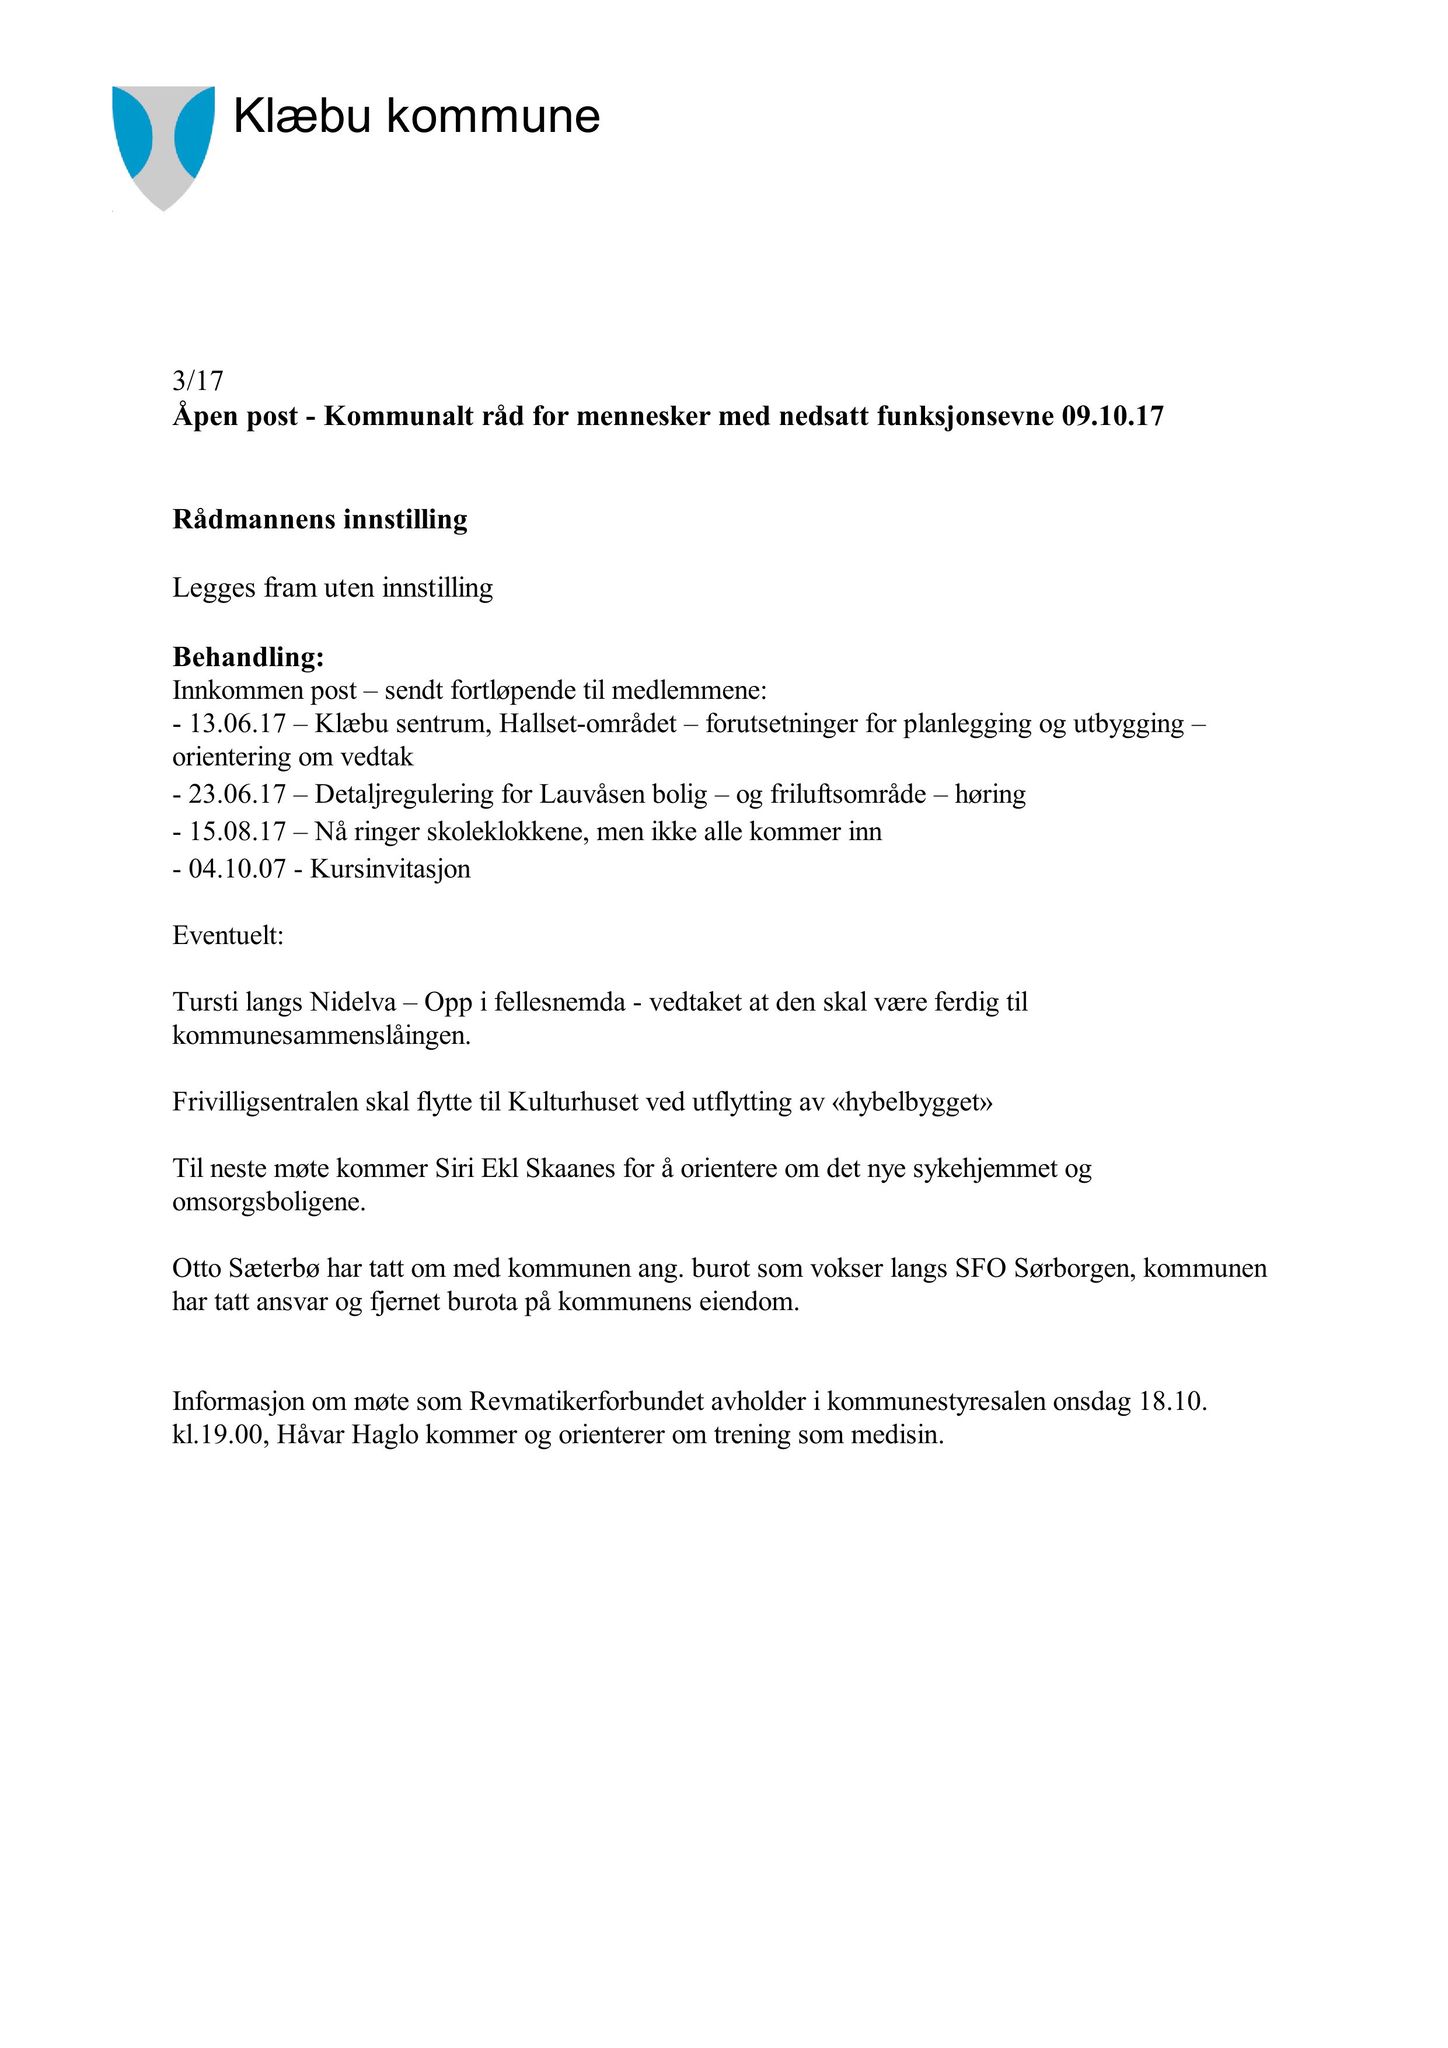 Klæbu Kommune, TRKO/KK/08-KMNF/L007: Kommunalt råd for mennesker med nedsatt funksjonsevne - Møteoversikt, 2017, s. 18